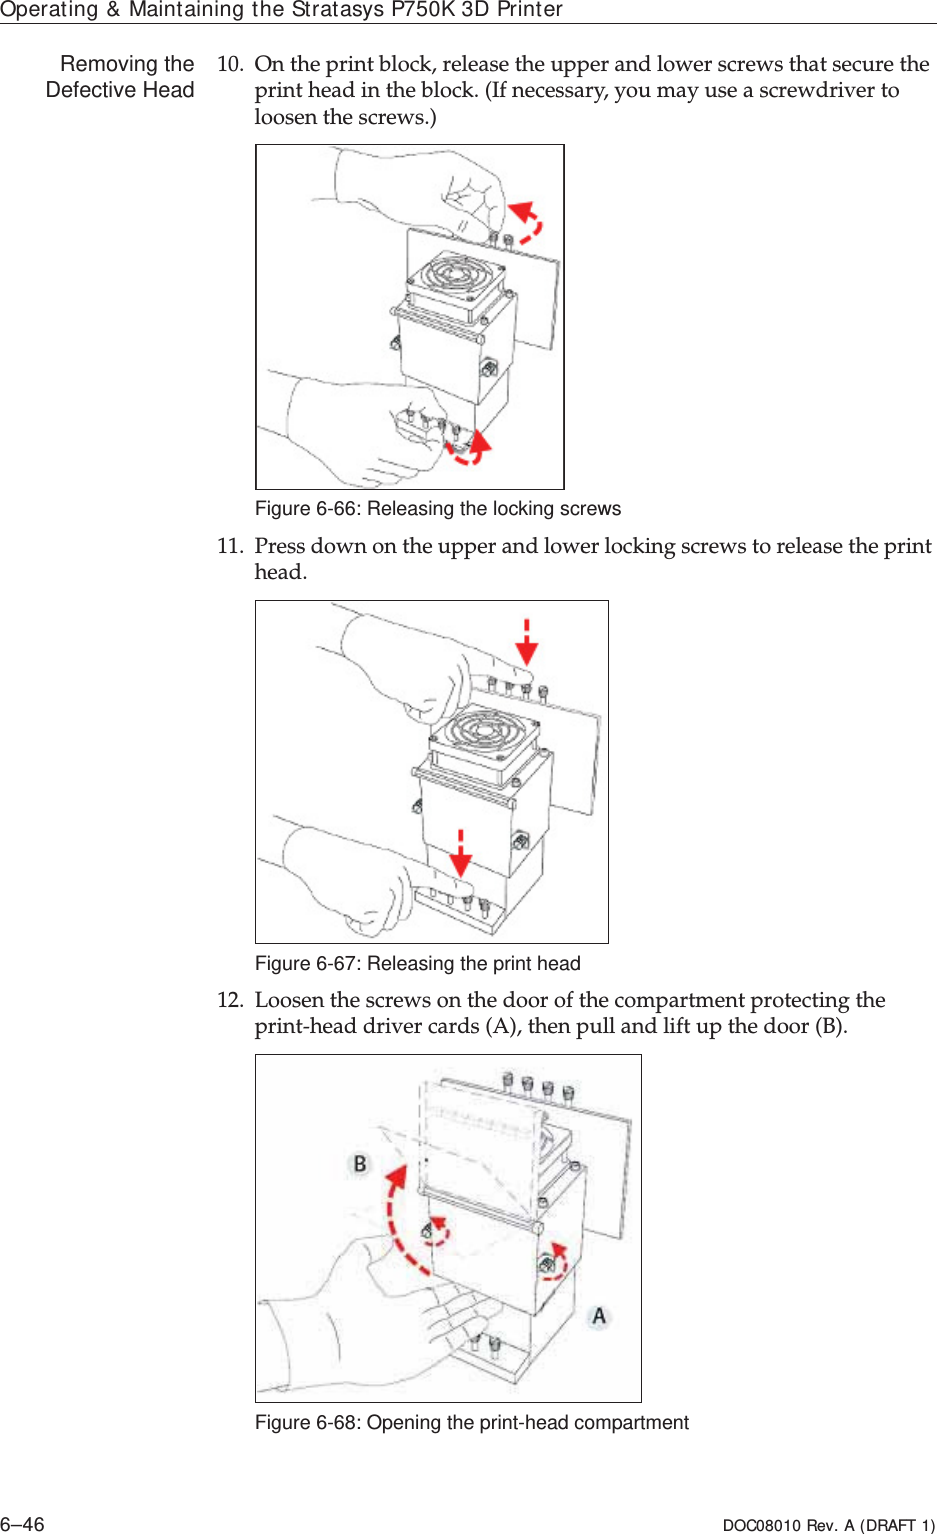 Operating &amp; Maintaining the Stratasys P750K 3D Printer6–46 DOC08010 Rev. A (DRAFT 1)Removing theDefective Head 10. Onȱtheȱprintȱblock,ȱreleaseȱtheȱupperȱandȱlowerȱscrewsȱthatȱsecureȱtheȱprintȱheadȱinȱtheȱblock.ȱ(Ifȱnecessary,ȱyouȱmayȱuseȱaȱscrewdriverȱtoȱloosenȱtheȱscrews.)Figure 6-66: Releasing the locking screws11. Pressȱdownȱonȱtheȱupperȱandȱlowerȱlockingȱscrewsȱtoȱreleaseȱtheȱprintȱhead.Figure 6-67: Releasing the print head12. LoosenȱtheȱscrewsȱonȱtheȱdoorȱofȱtheȱcompartmentȱprotectingȱtheȱprintȬheadȱdriverȱcardsȱ(A),ȱthenȱpullȱandȱliftȱupȱtheȱdoorȱ(B).Figure 6-68: Opening the print-head compartment